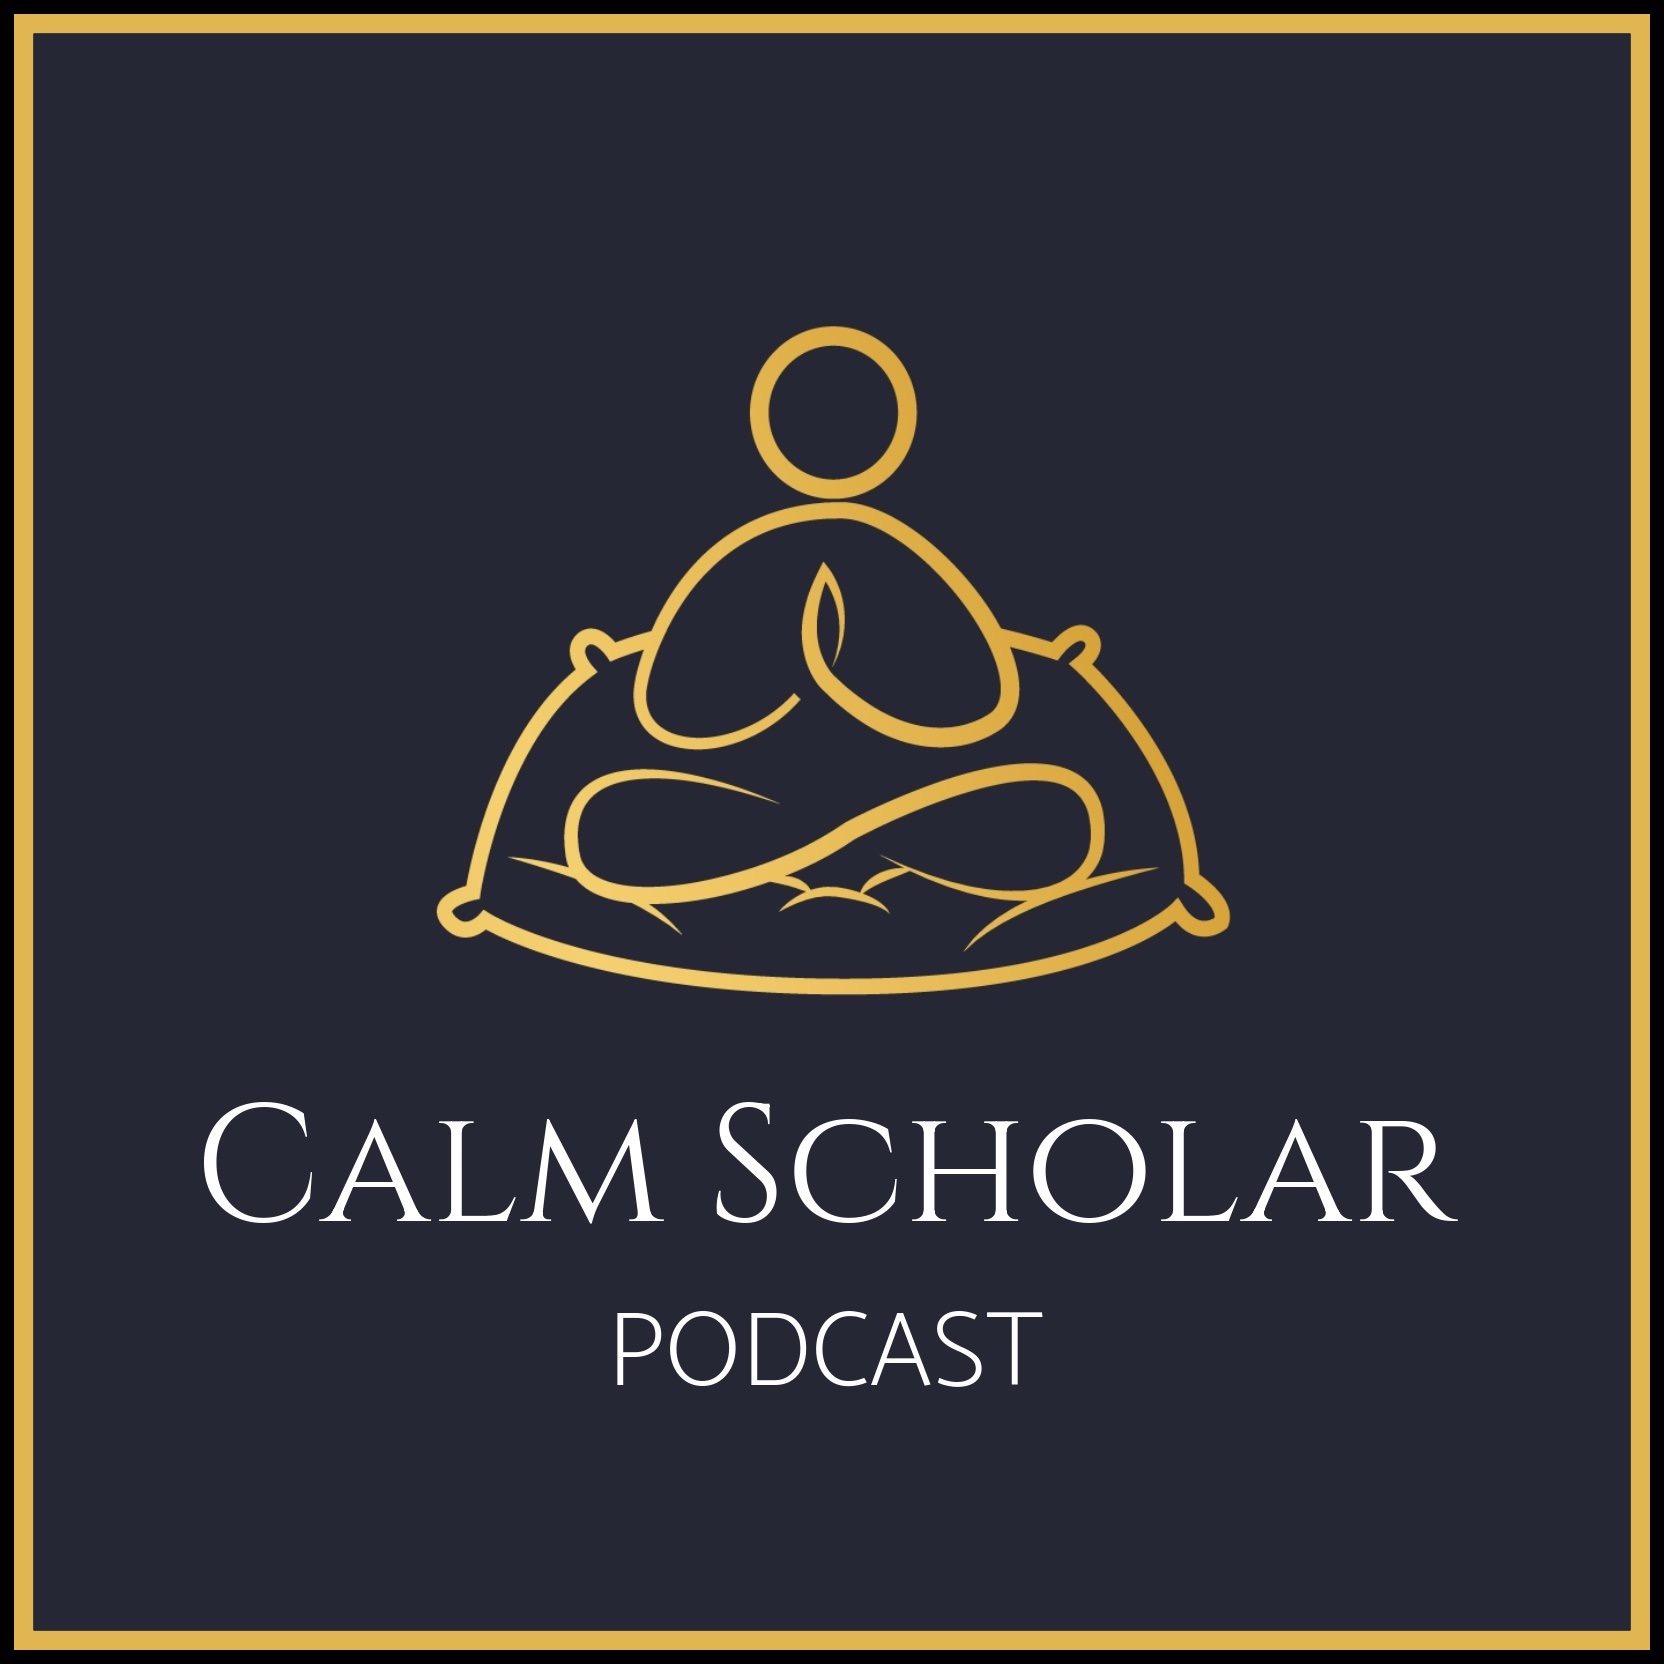 The Calm Scholar Podcast